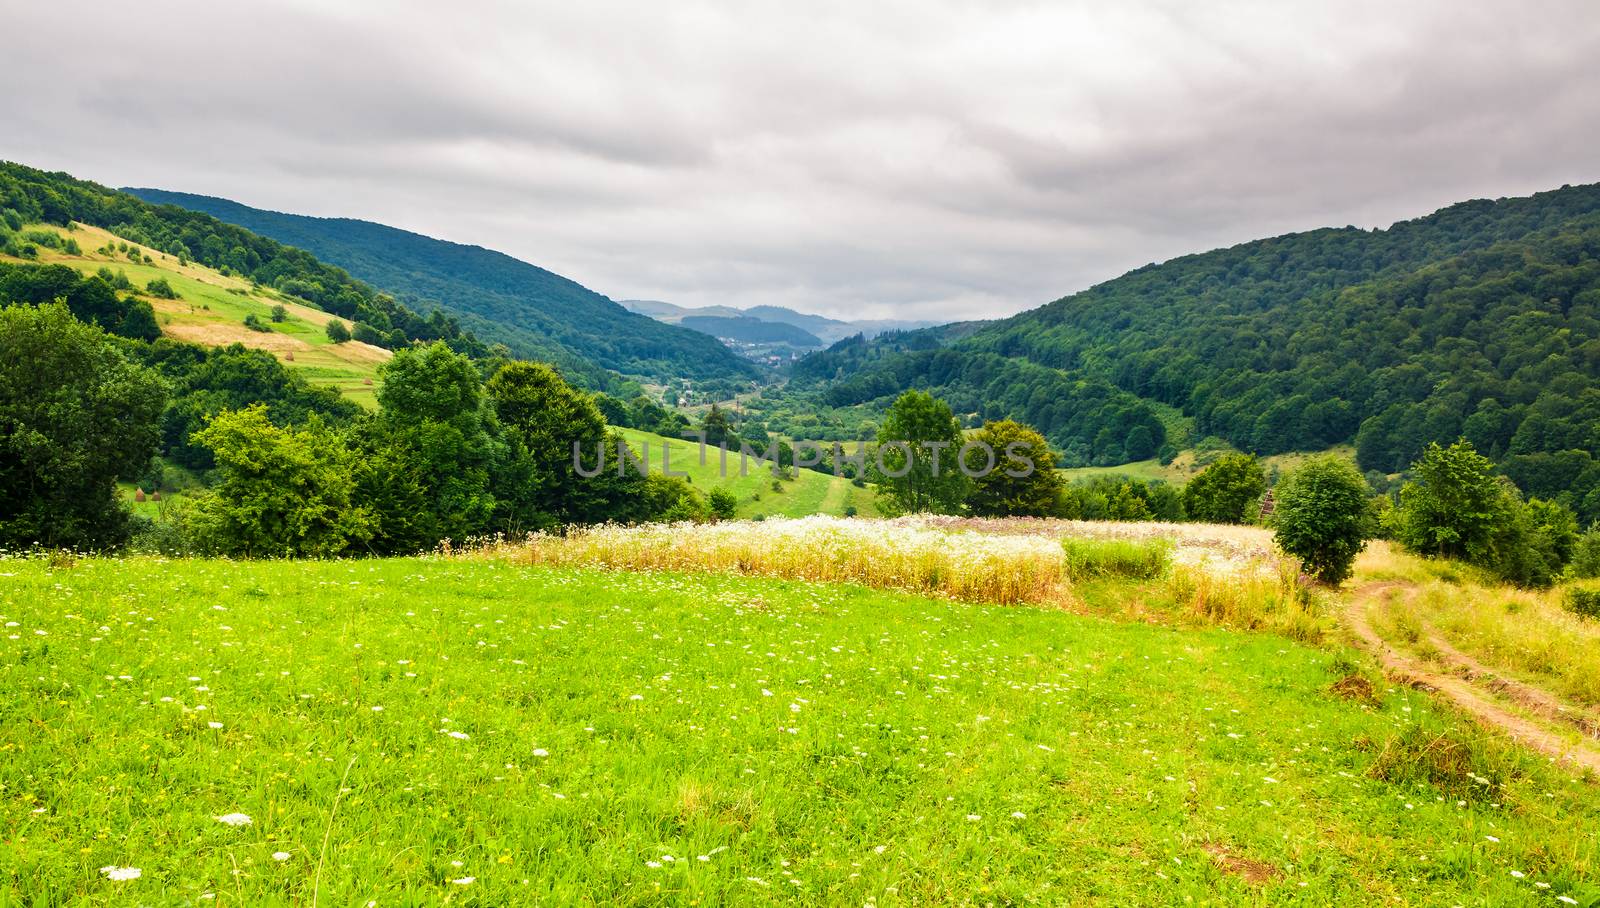 rural field on hillside in mountains by Pellinni